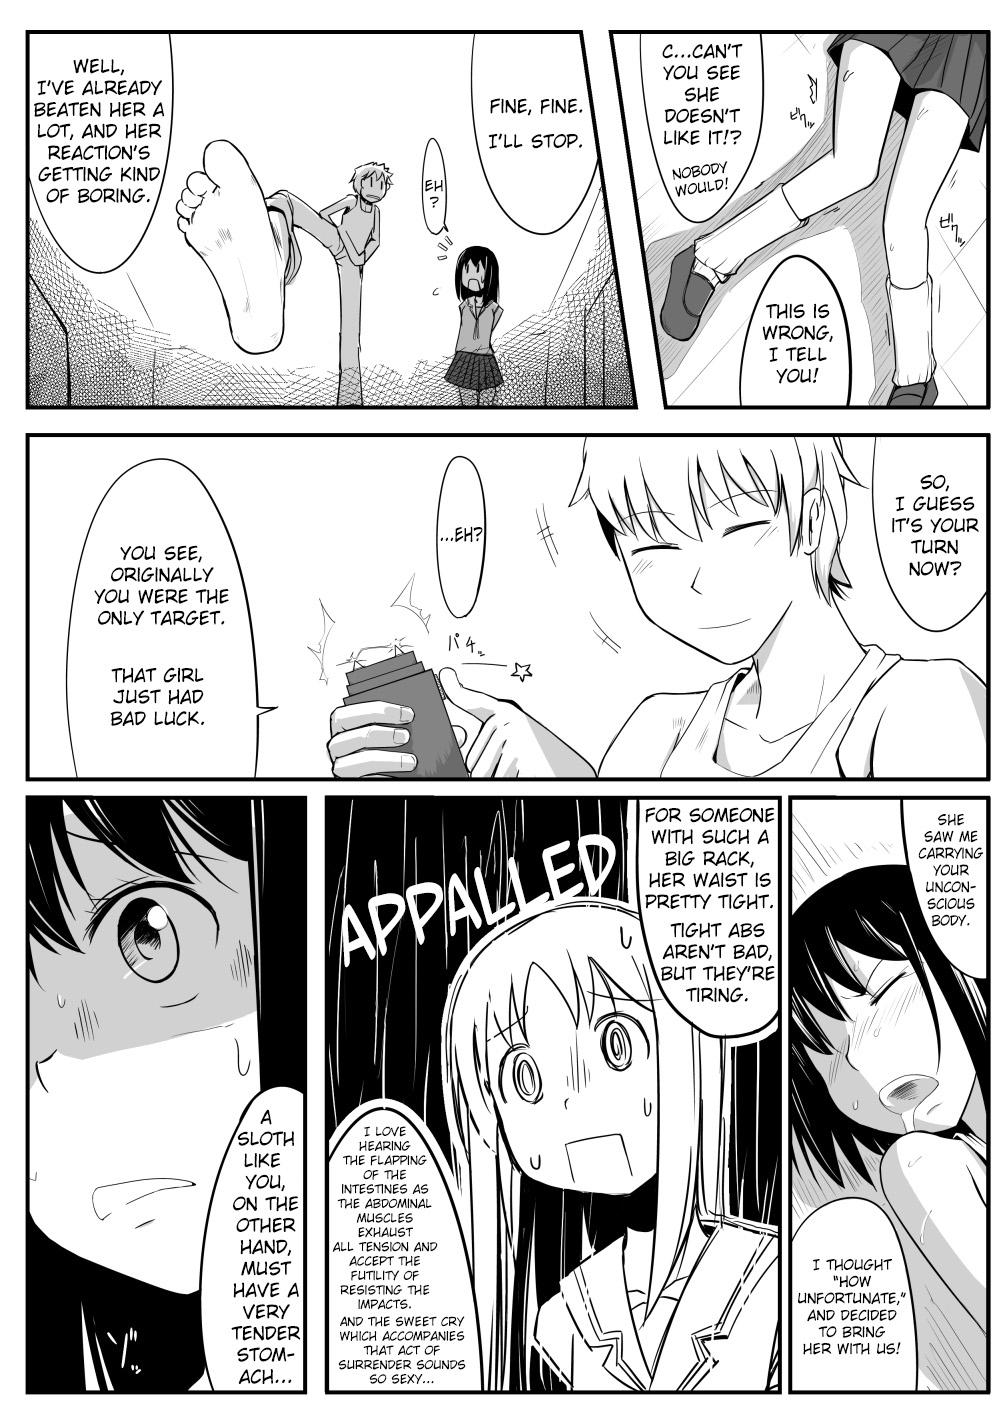 Gay 3some Manga About Viciously Beating Osaka’s Stomach - Azumanga daioh Tanga - Page 5